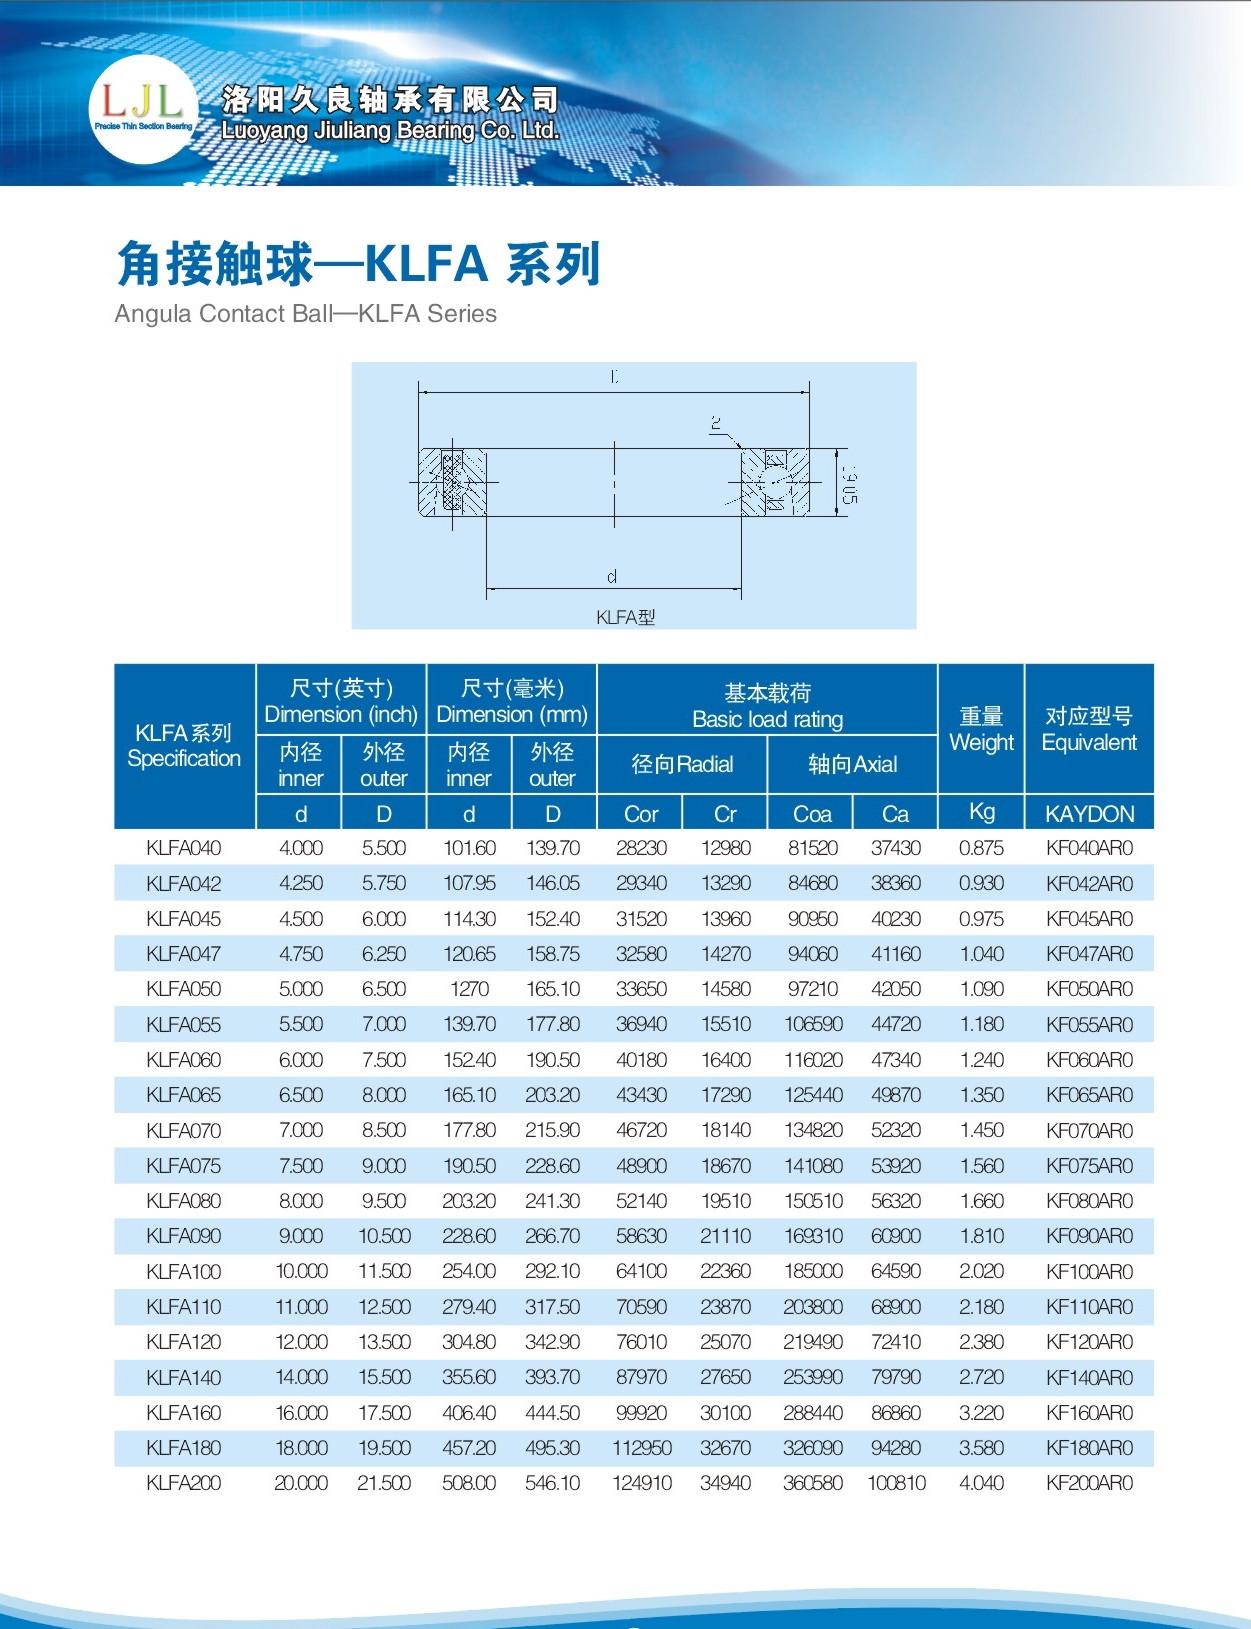 KLFA040	 | 
KLFA042	 | 
KLFA045	 | 
KLFA047	 | 
KLFA050	 | 
KLFA055	 | 
KLFA060	 | 
KLFA065	 | 
KLFA070	 | 
KLFA075	 | 
KLFA080	 | 
KLFA090	 | 
KLFA100	 | 
KLFA110	 | 
KLFA120	 | 
KLFA140	 | 
KLFA160	 | 
KLFA180	 | 
KLFA200	 | 